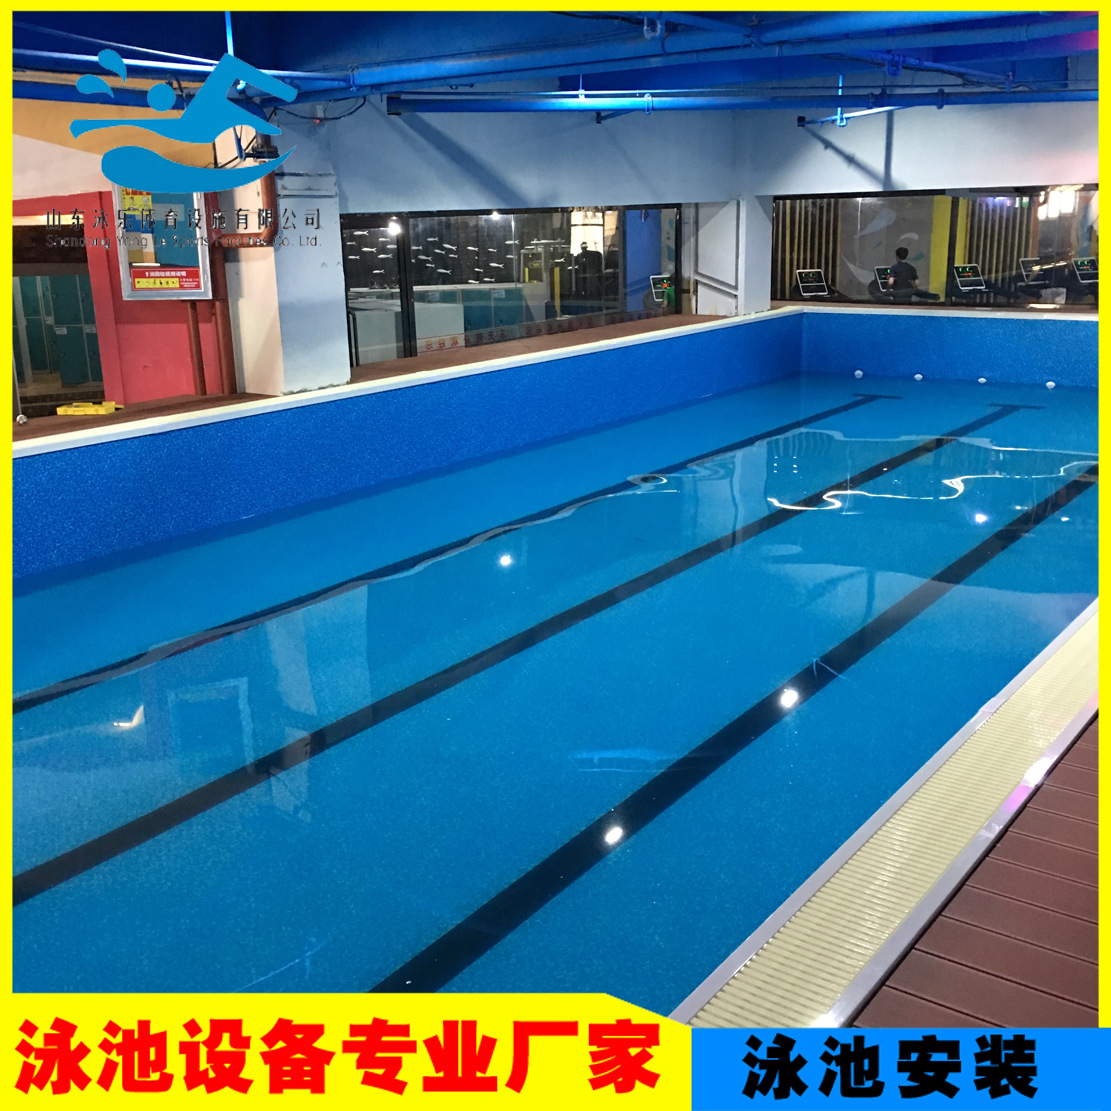 中山横栏别墅泳池 - 别墅游泳池案例 - 广州德普科技有限公司